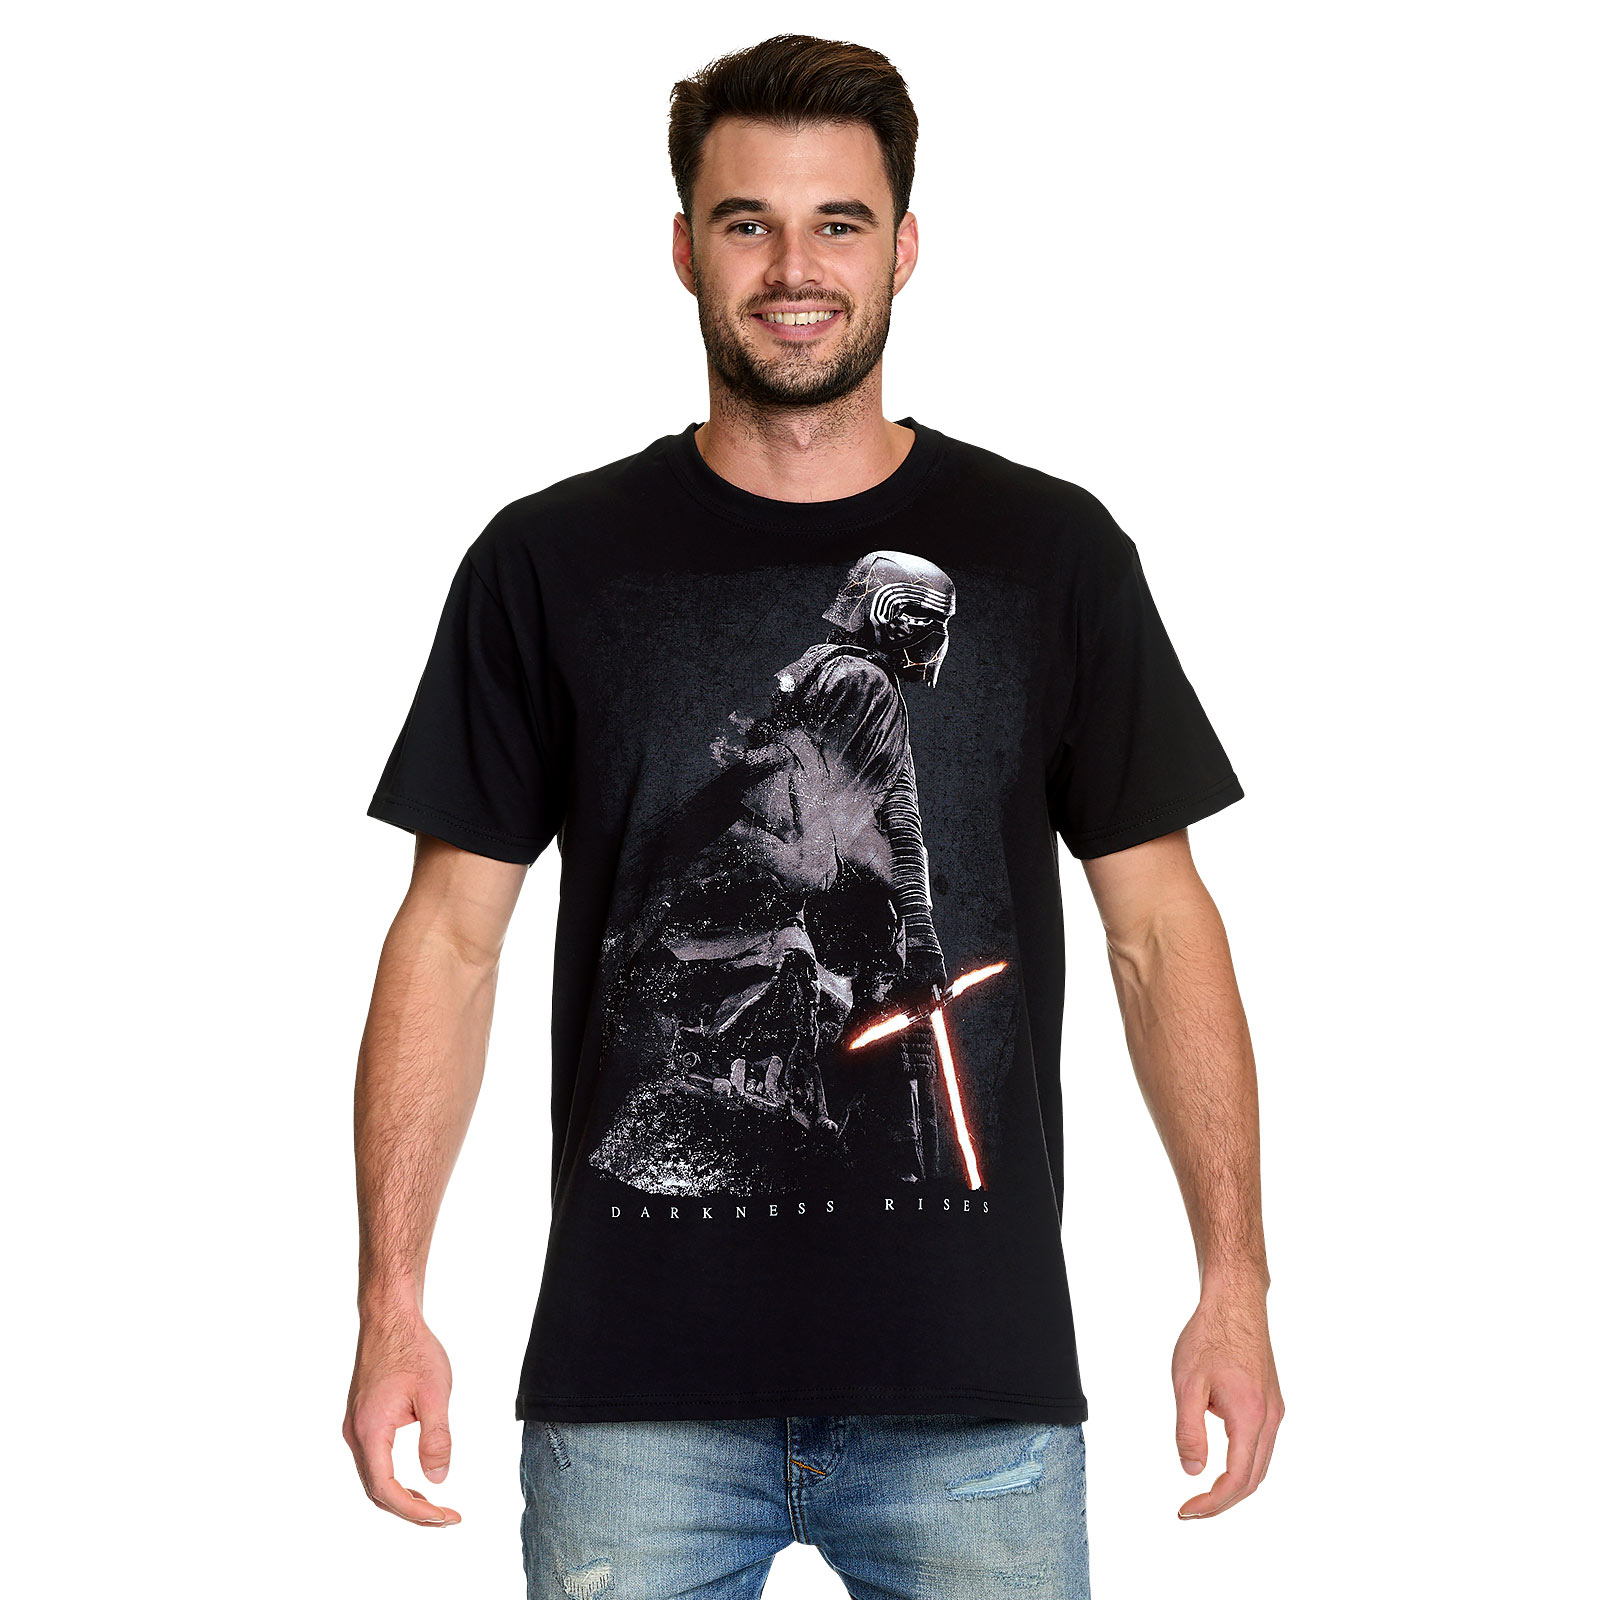 Star Wars - Darkness Rises T-Shirt schwarz